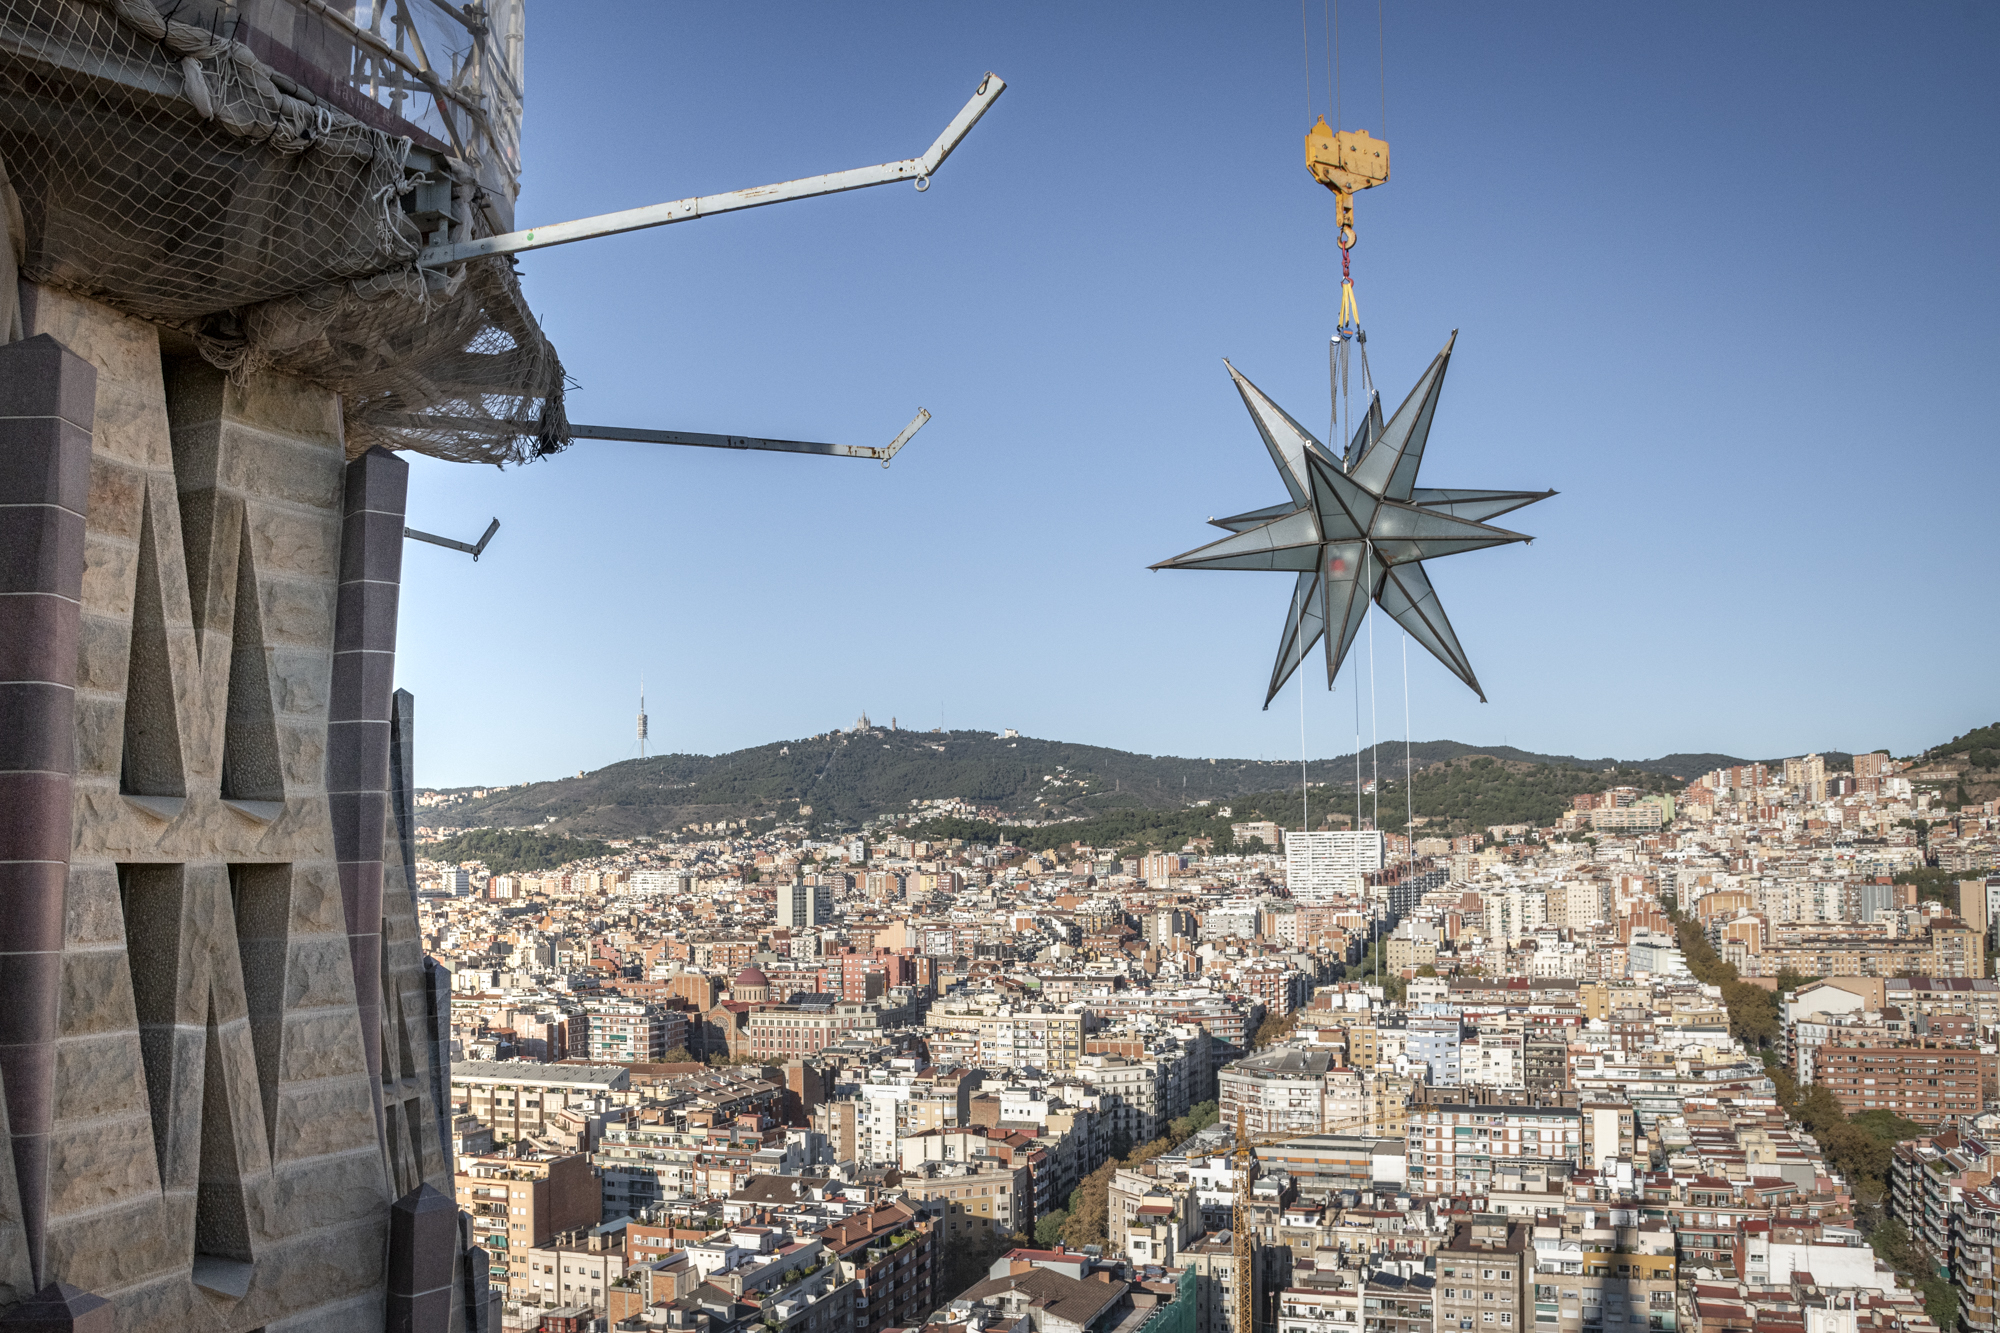 Αντιδράσεις για το γιγάντιο αστέρι πάνω από τη Σαγράδα Φαμίλια στη Βαρκελώνη – Απειλούνται οι κατοικίες 1.000 οικογενειών